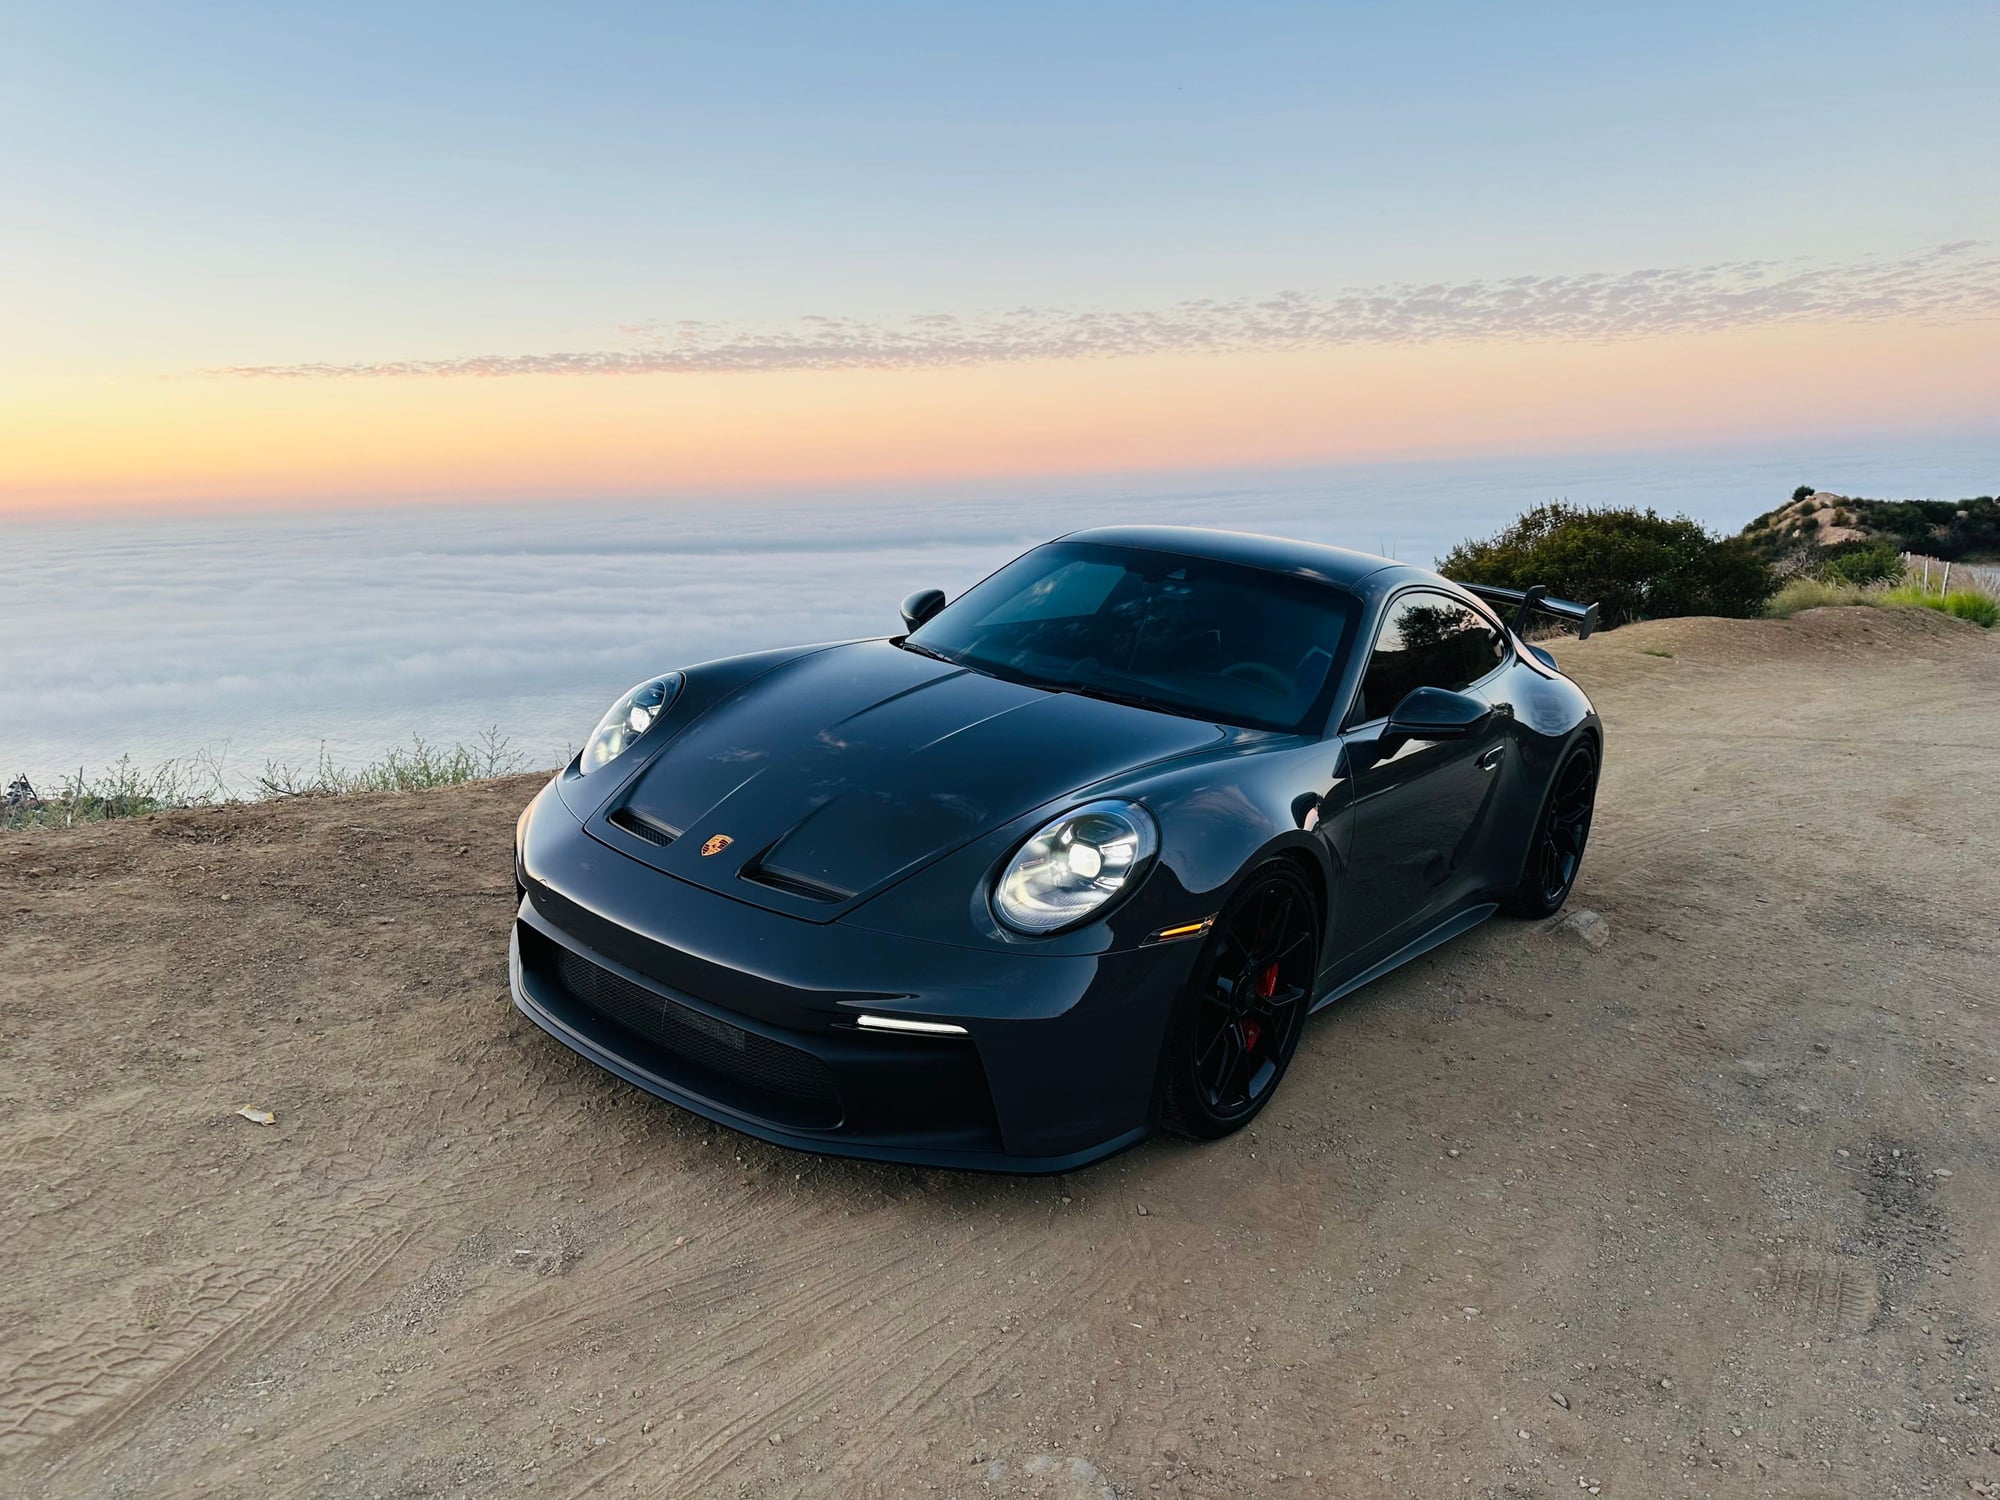 2022 Porsche 911 -  - Used - VIN Xxxxxxxxxxxxxxxx - 9,954 Miles - Automatic - Coupe - Los Angeles, CA 91436, United States